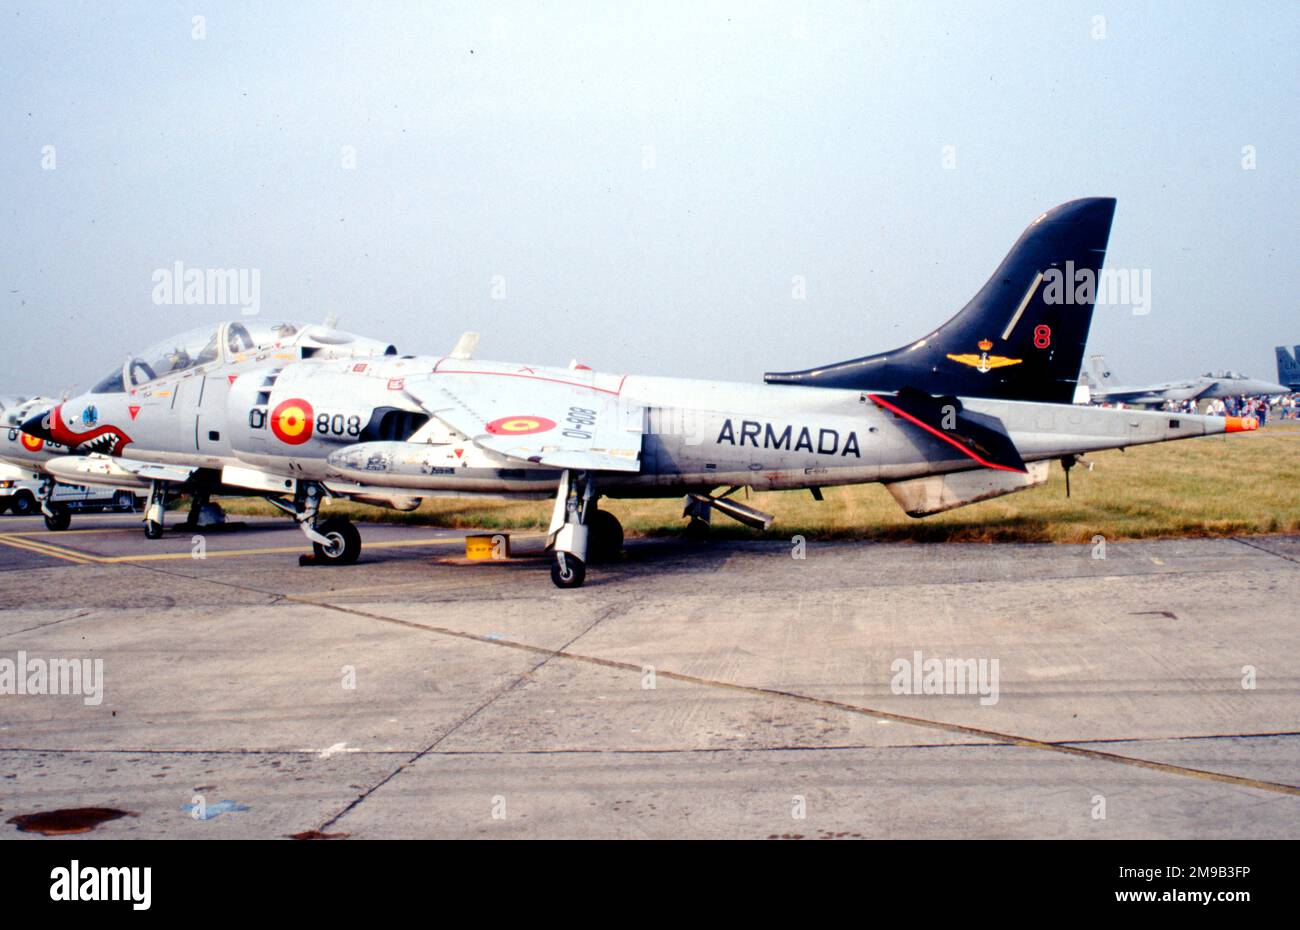 Armada Espanola - Hawker Siddeley TAV-8S Matador 01-808 (msn 212030, ex BU 159564), d'Escuadrilla 008, à la RAF Fairford en juillet 1994 pour le Royal International Air Tattoo. . (Armada Espanola - Marine espagnole) Banque D'Images